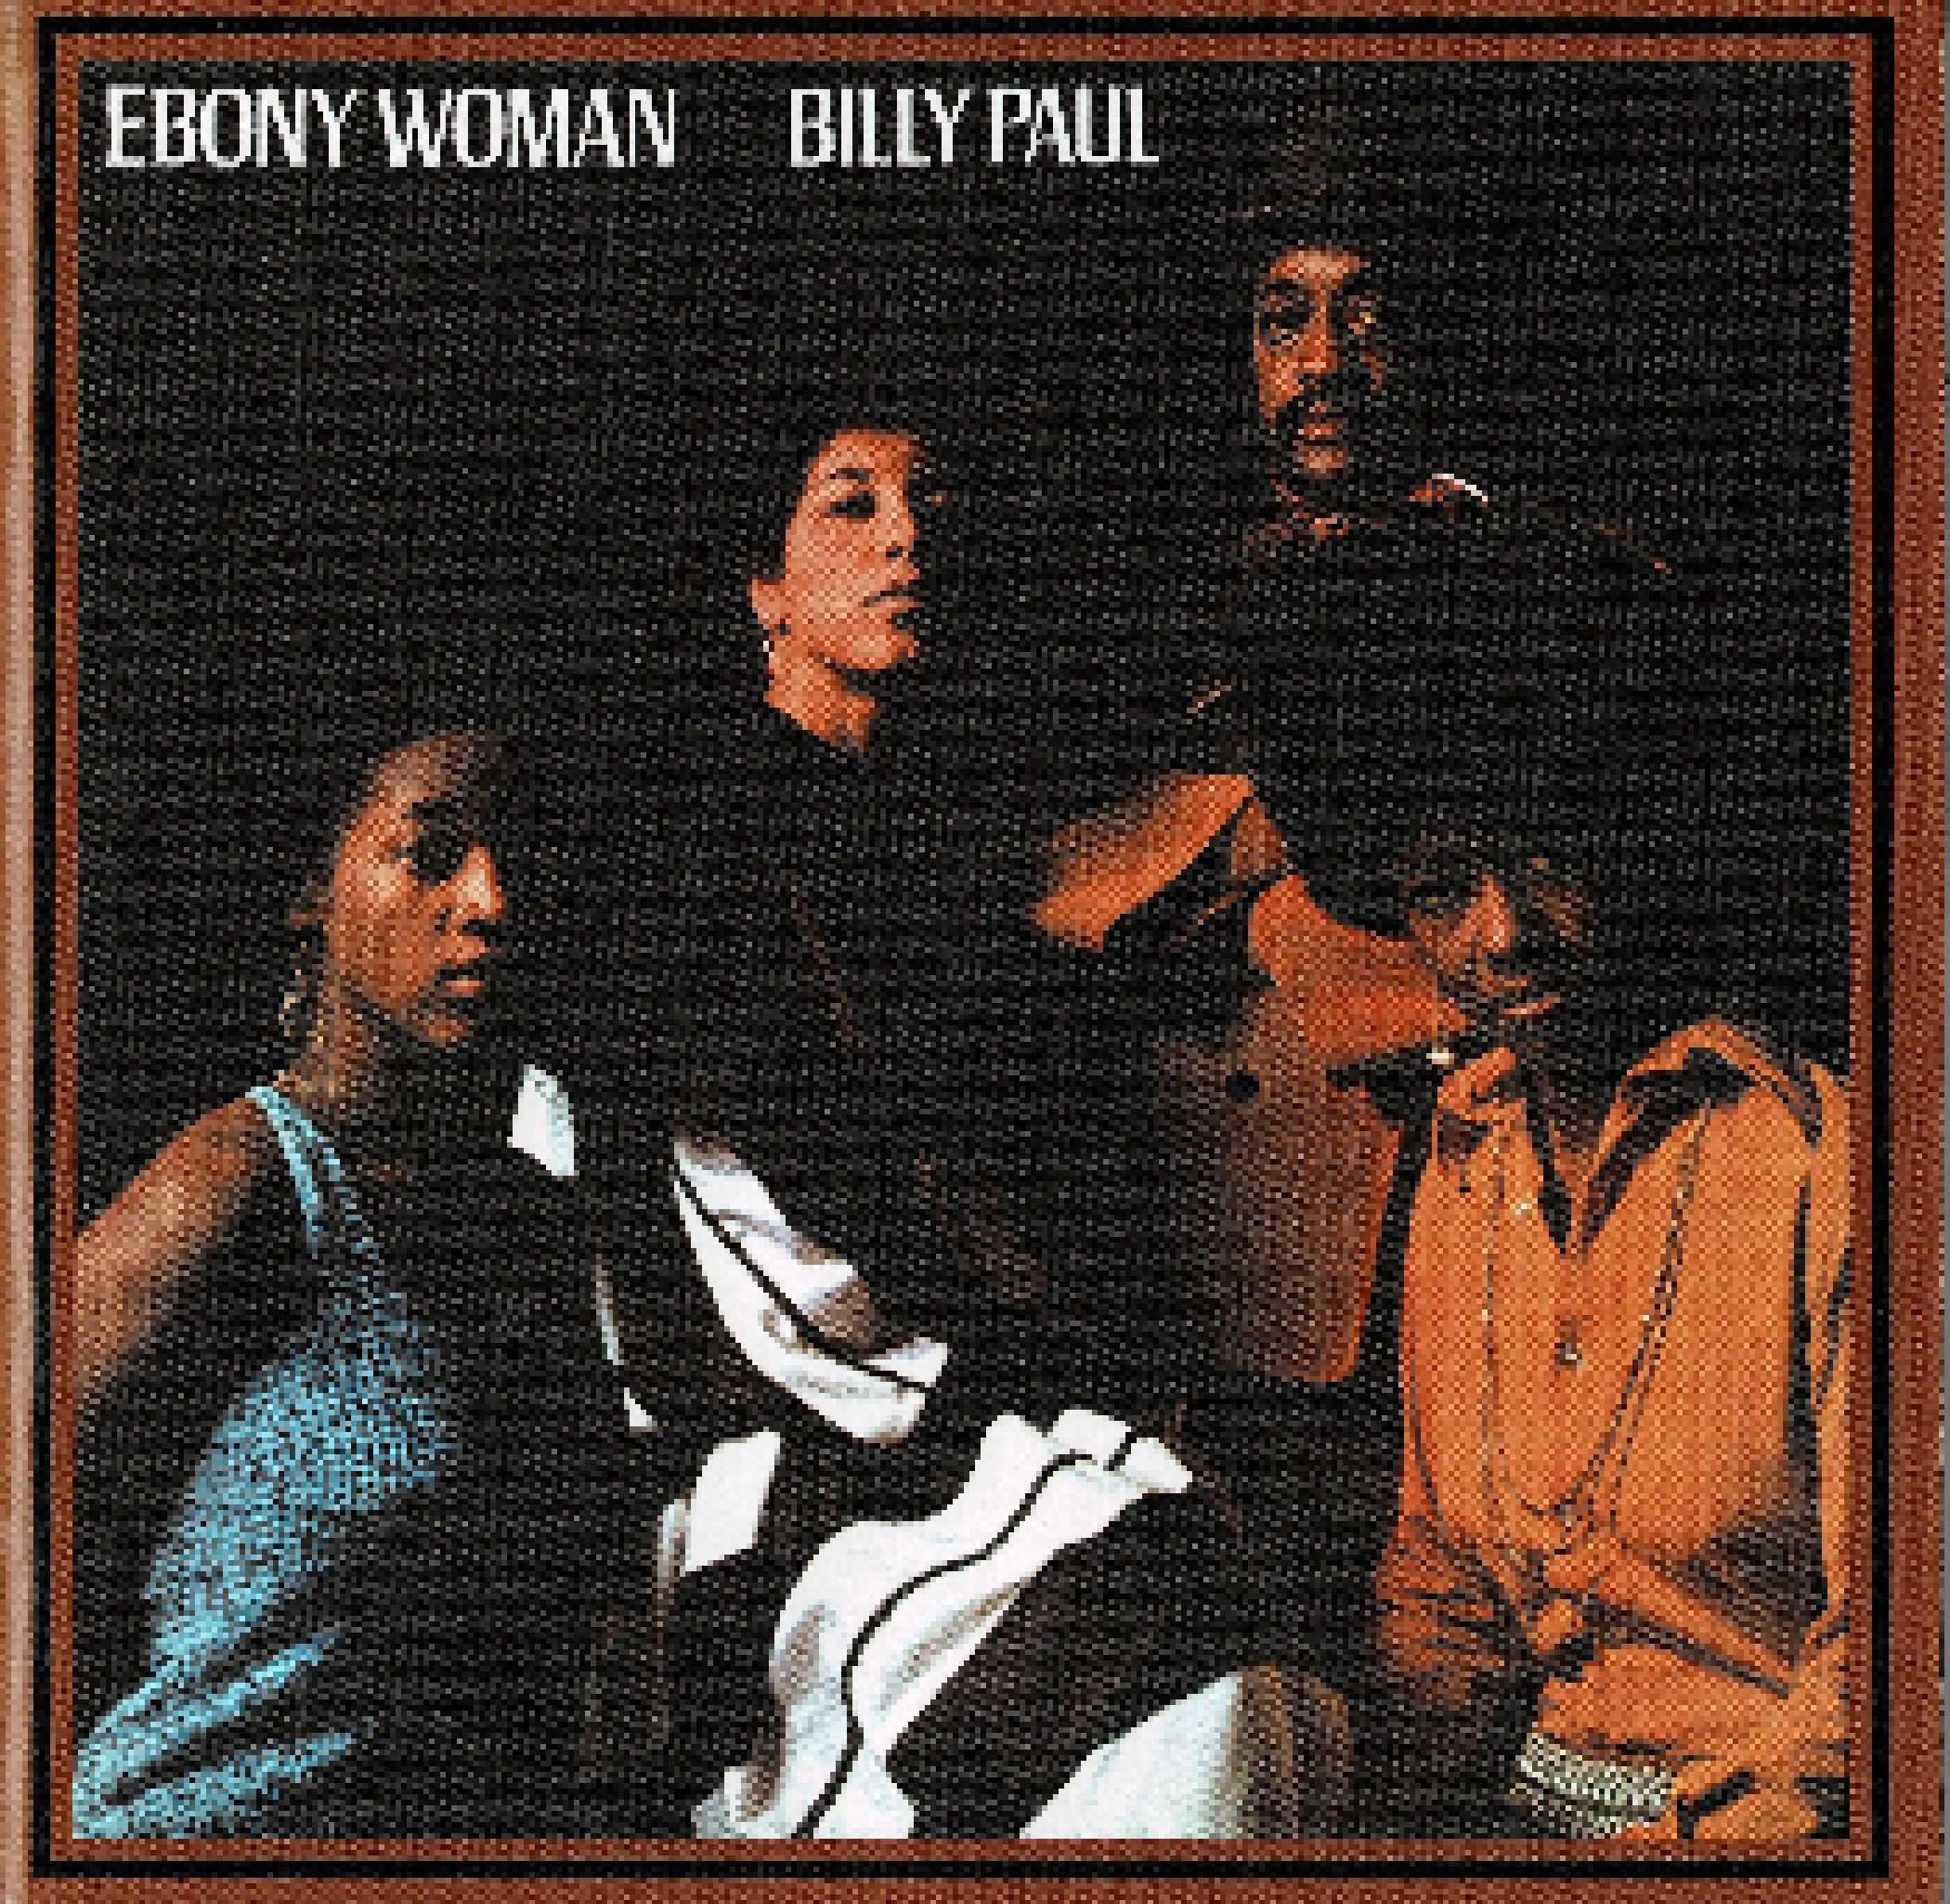 Ebony woman billy paul